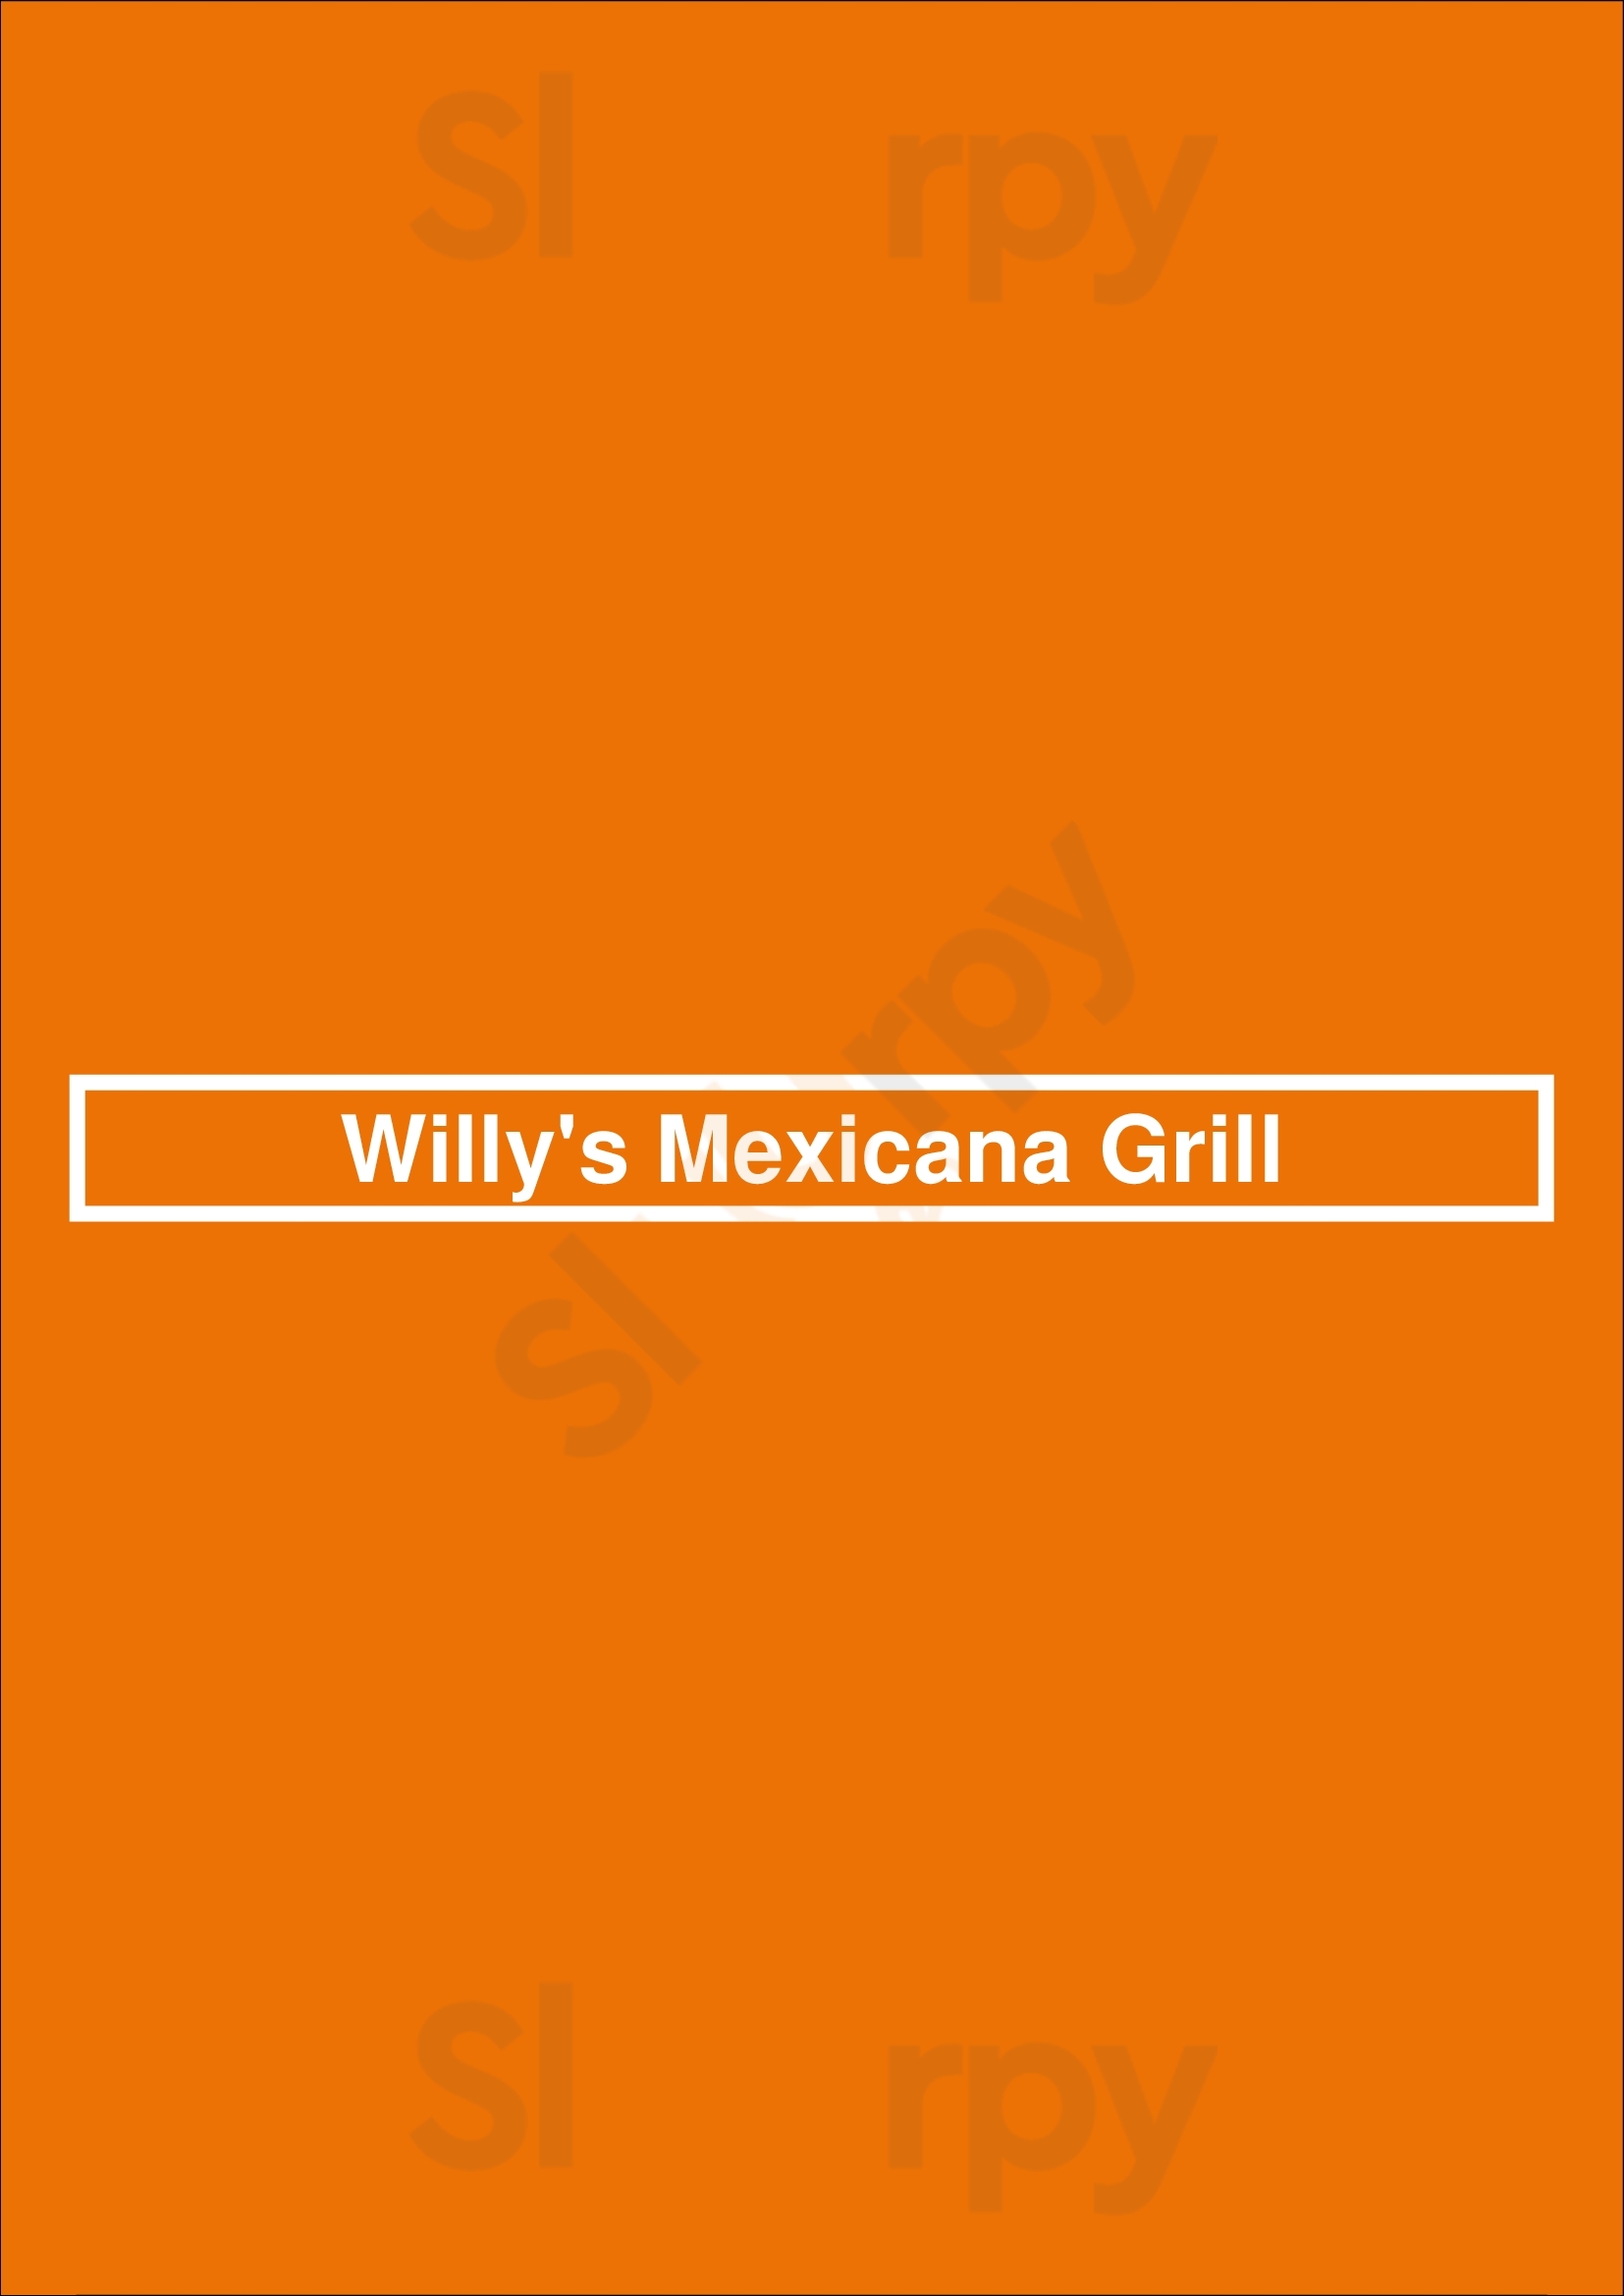 Willy's Mexicana Grill Atlanta Menu - 1